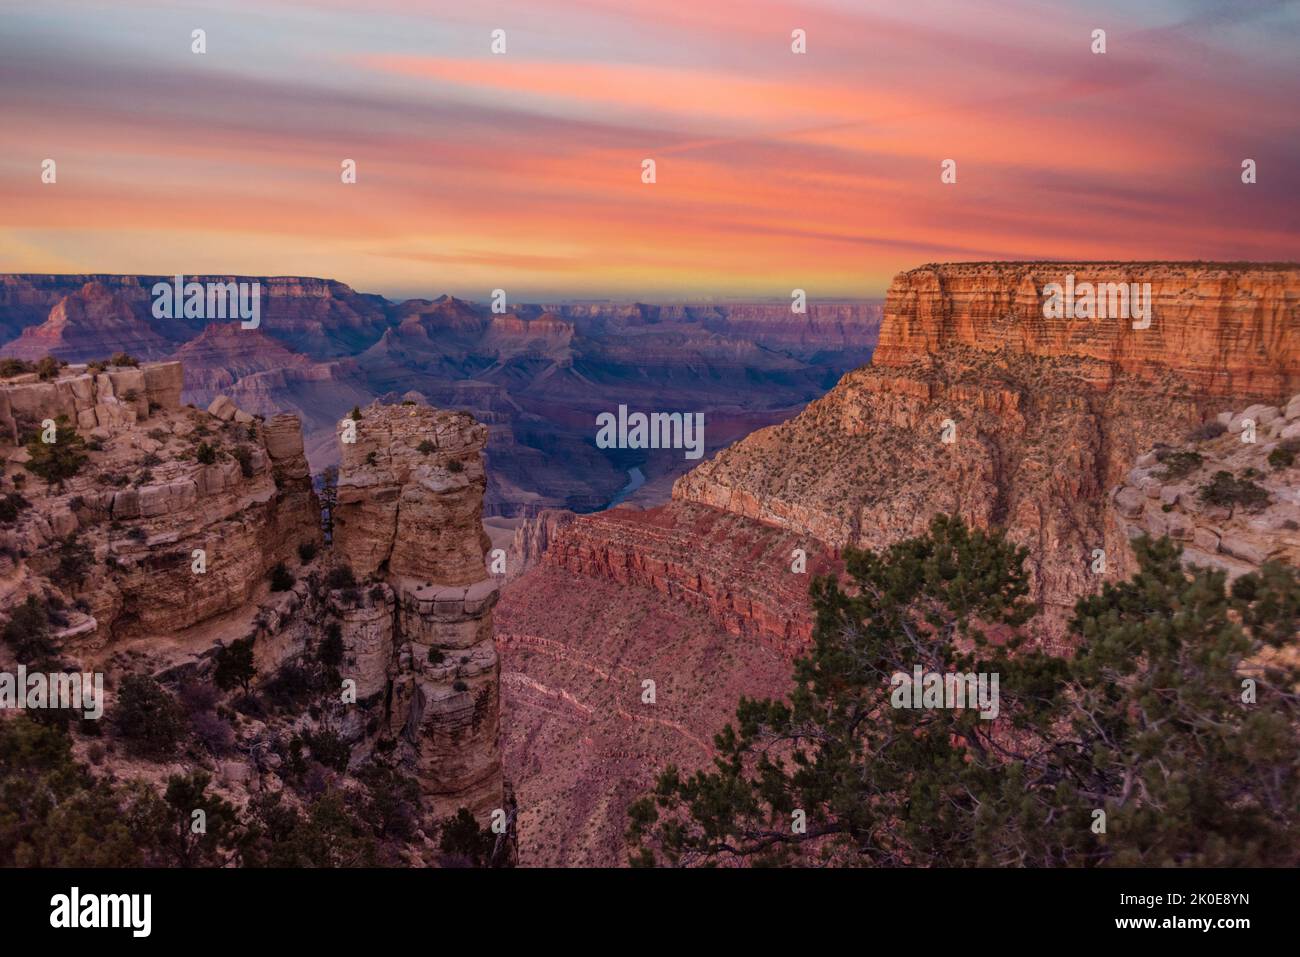 Une vue sur le parc national du Grand Canyon, à la fois magnifique et spectaculaire, pendant un coucher de soleil de moody, montre les détails complexes des crêtes et des formati Banque D'Images